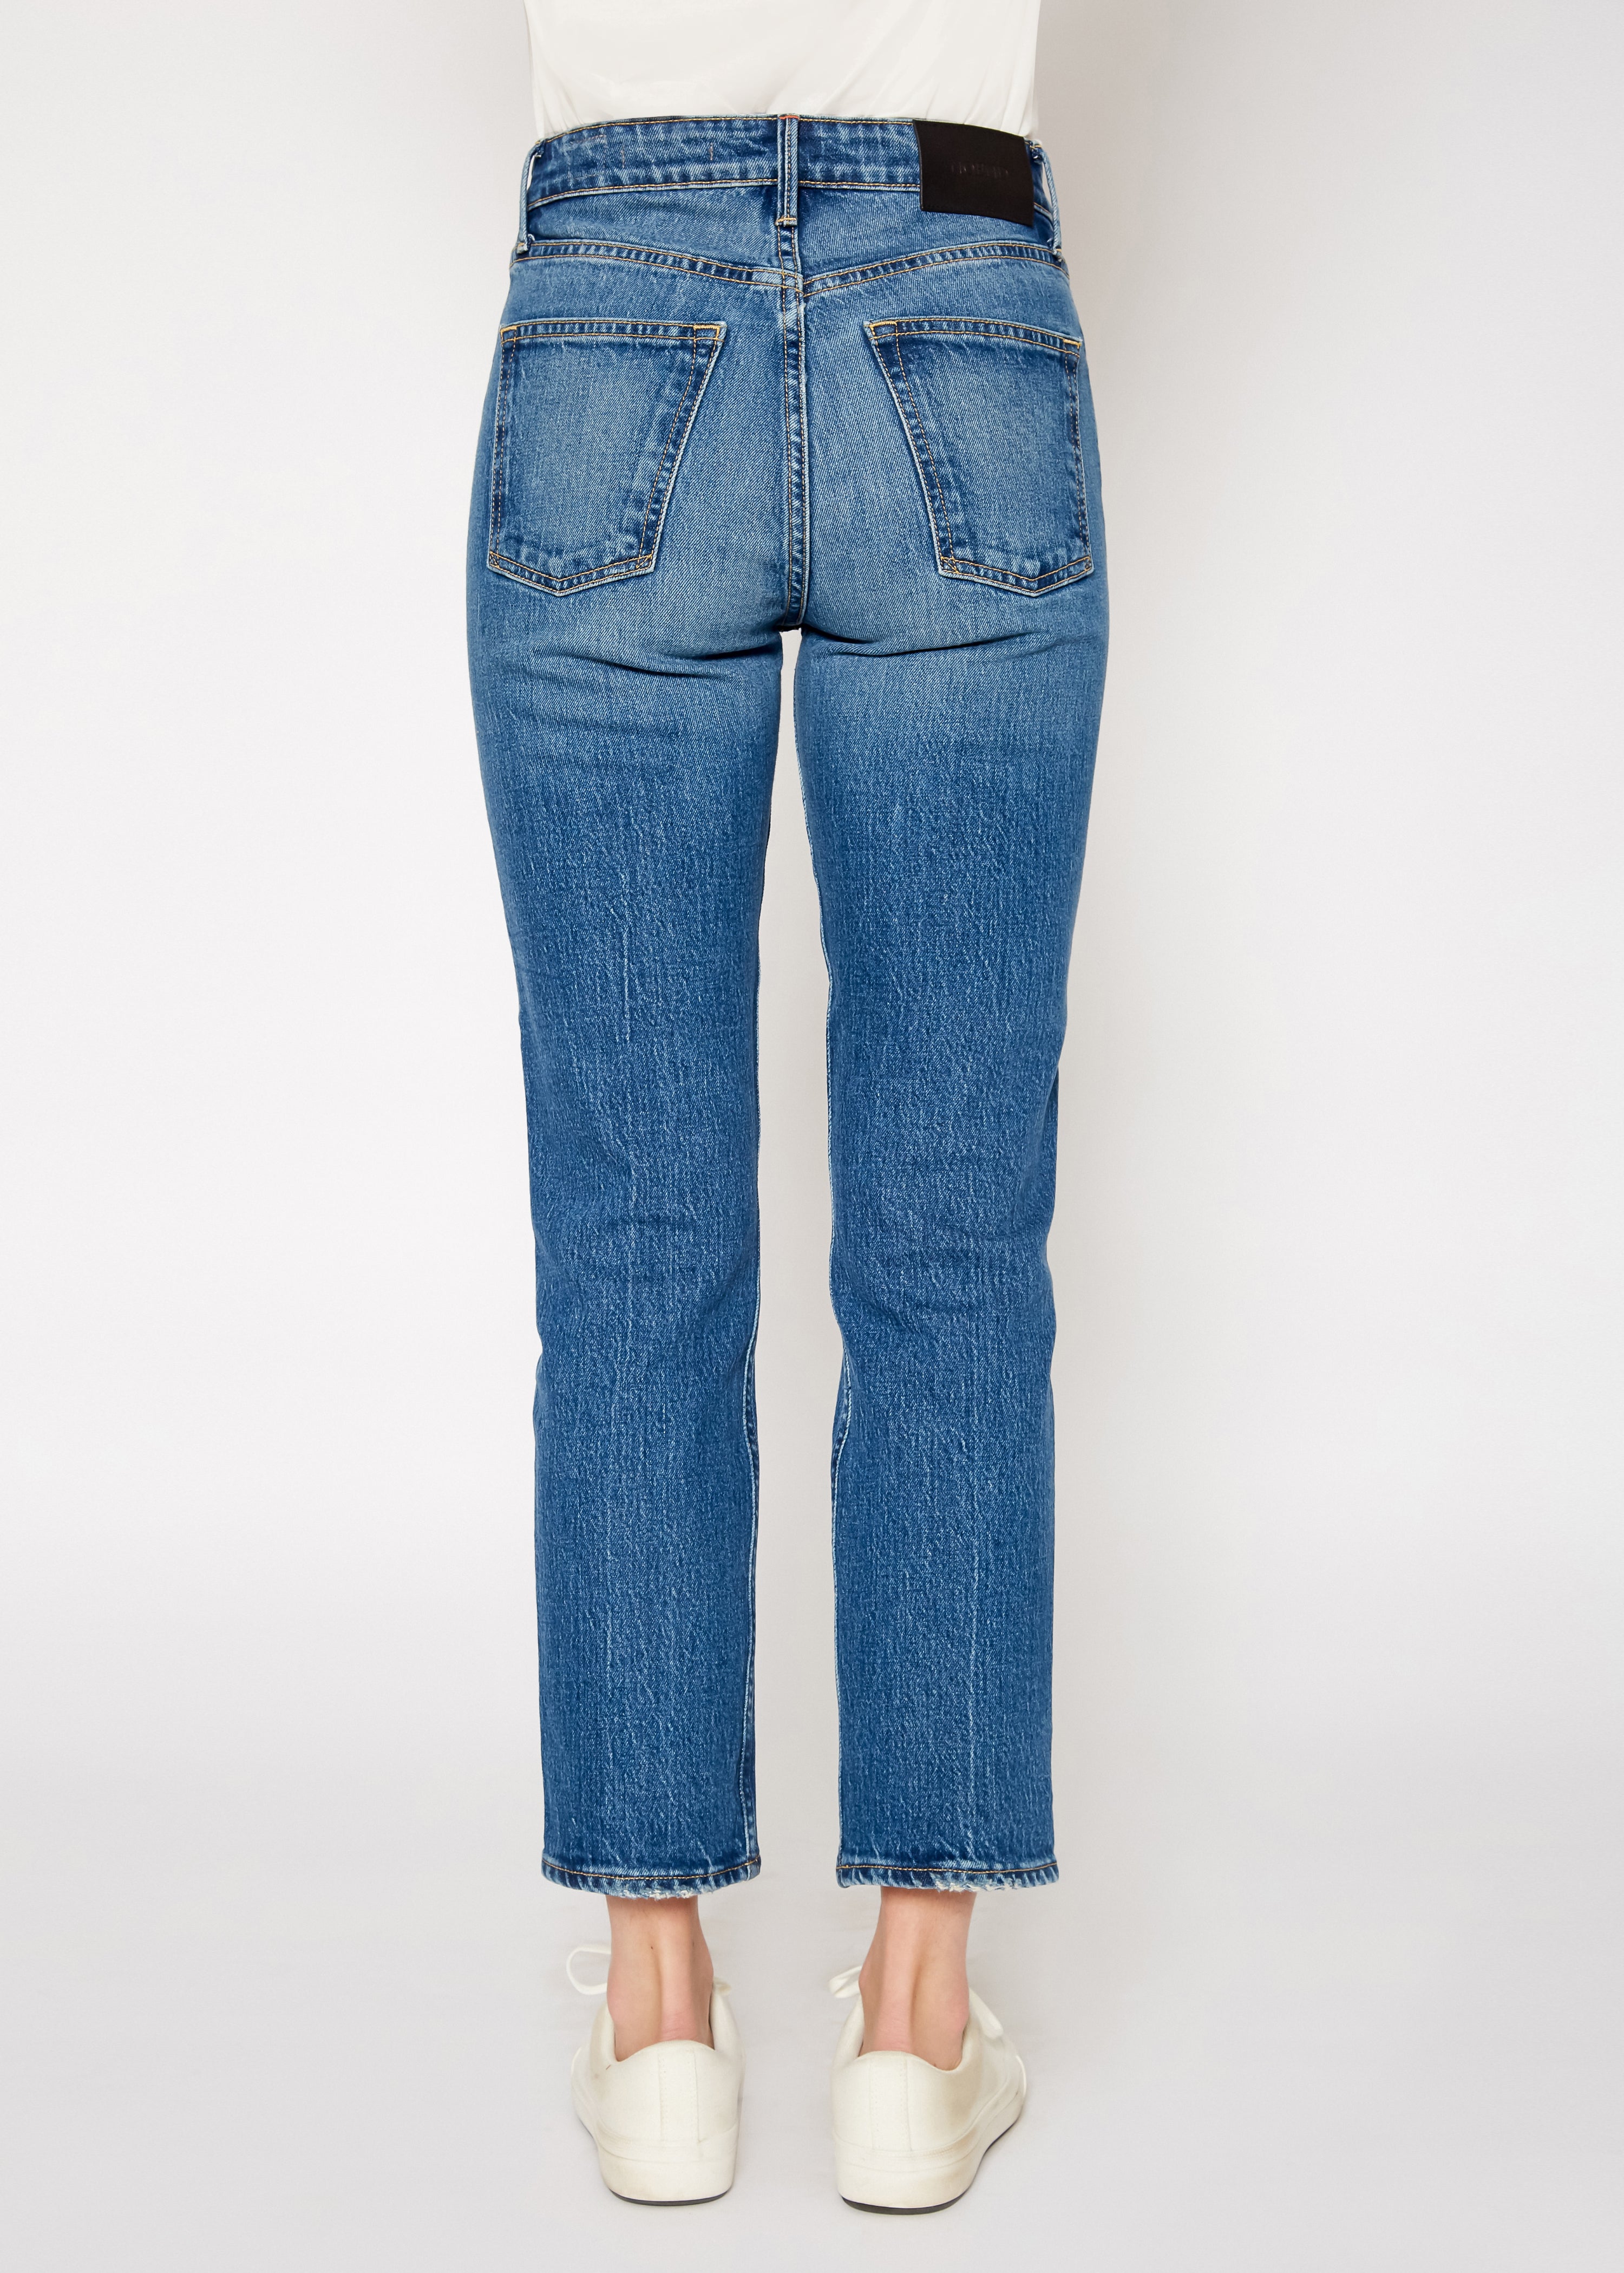 Eve Slim Straight Crop Jeans In Cripple Creek - Noend Denim